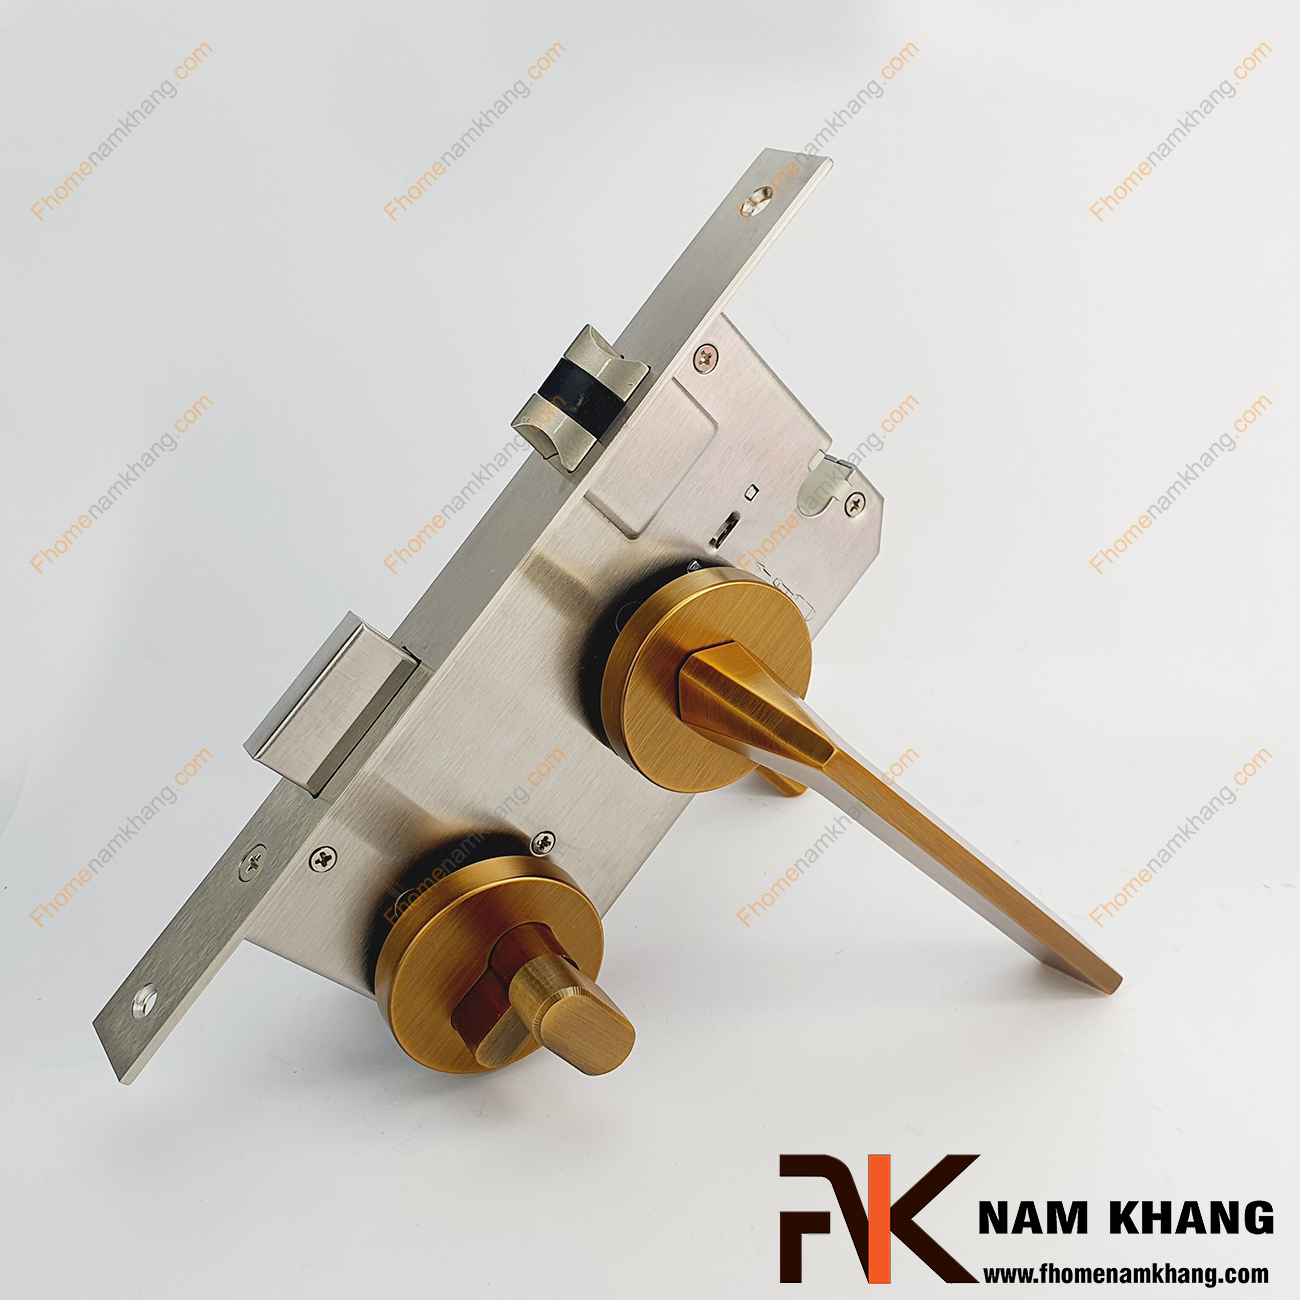 Khóa cửa phân thể bằng hợp kim cao cấp NK570-CF có thiết kế phần ốp khóa và tay gạt riêng biệt, khá nhỏ gọn và tạo được sự nổi bật độc đáo của một dòng khóa cửa.